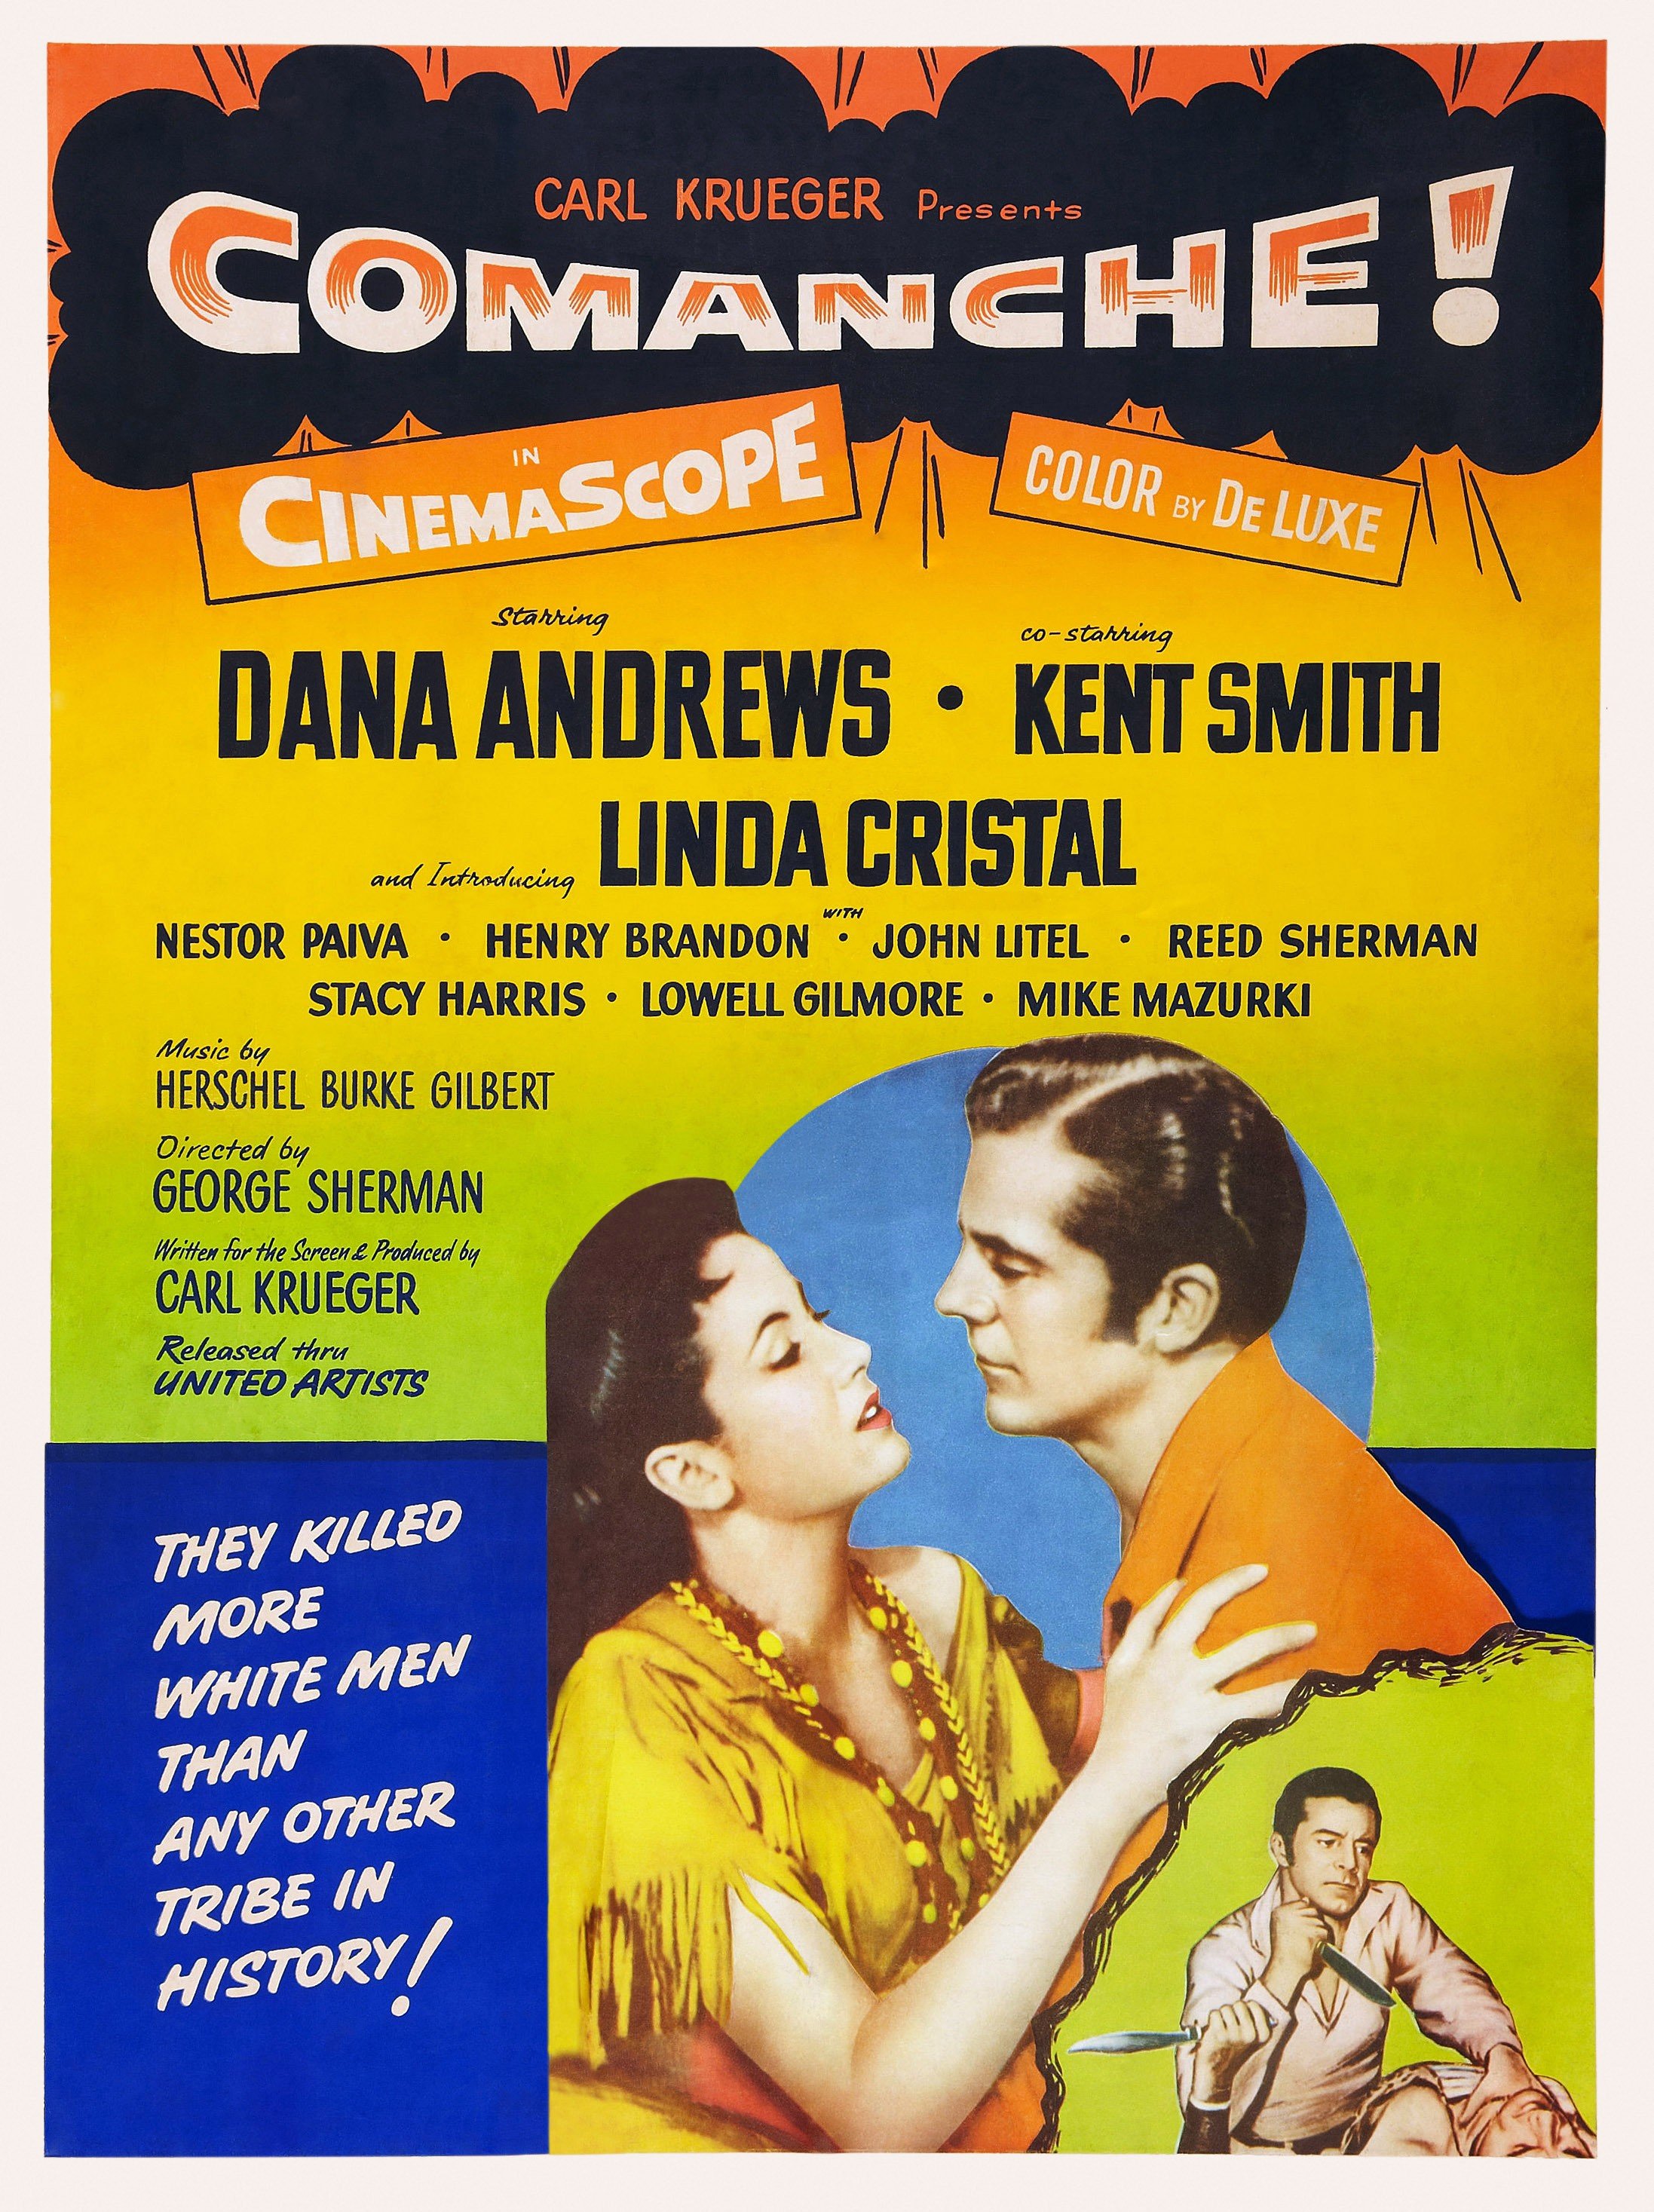 Comanche, póster estadounidense, desde la izquierda: Linda Cristal, Dana Andrews, 1956. | Foto: Getty Images